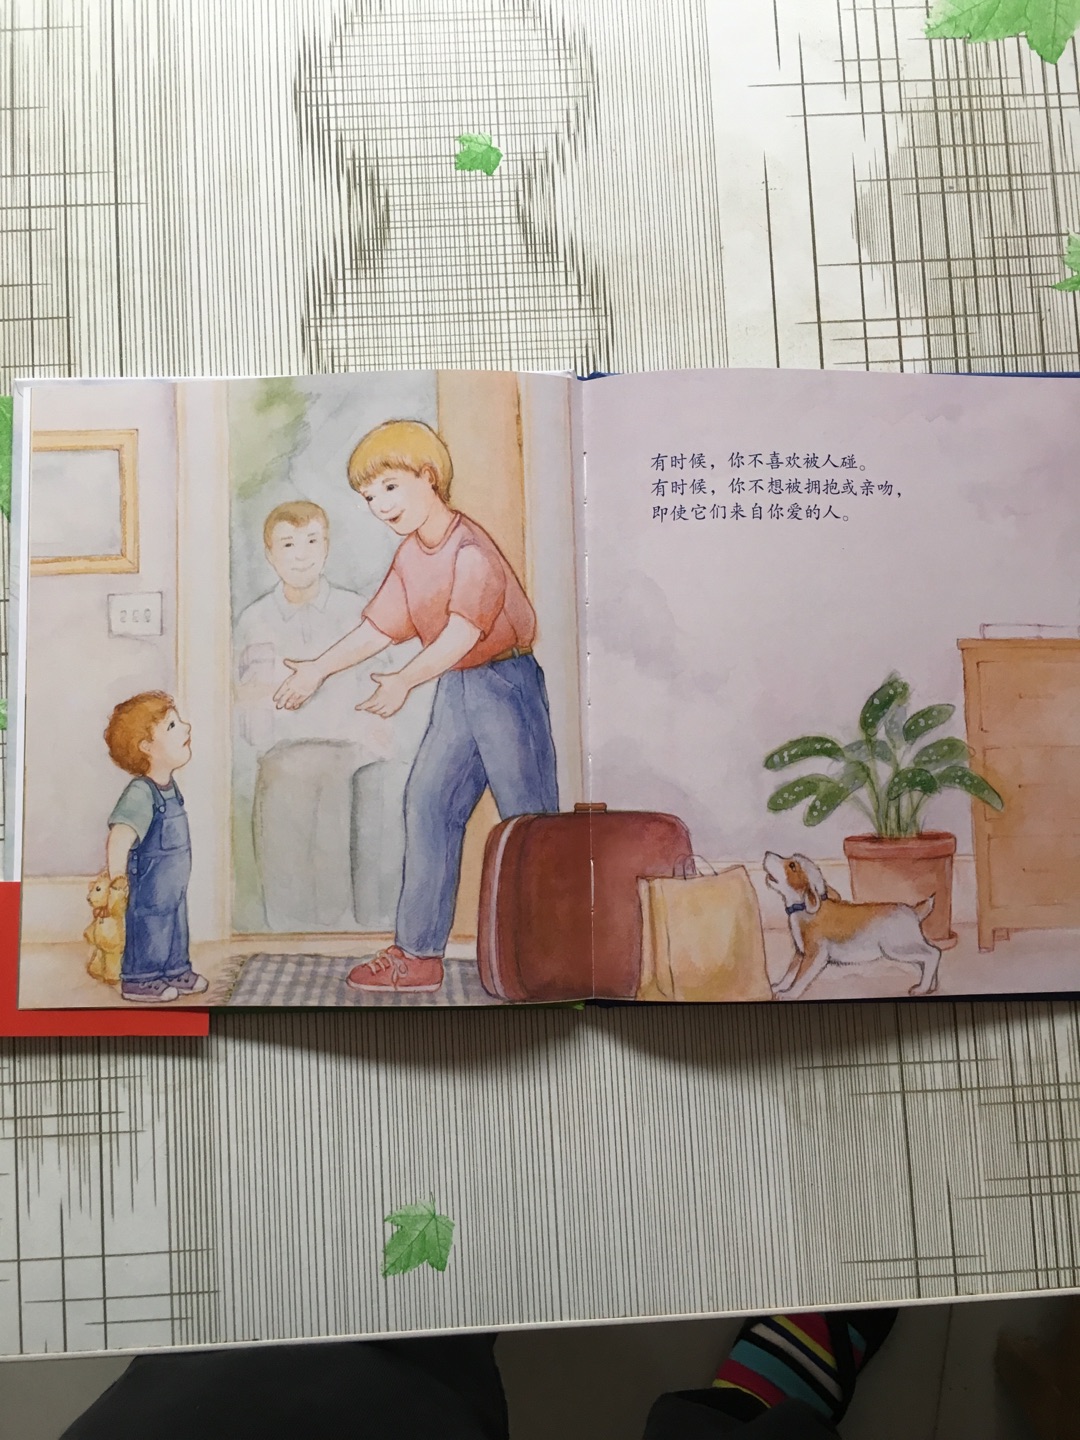 这绘本挺好看的，简单，宝宝很喜欢看。而且教孩子自己保护自己。